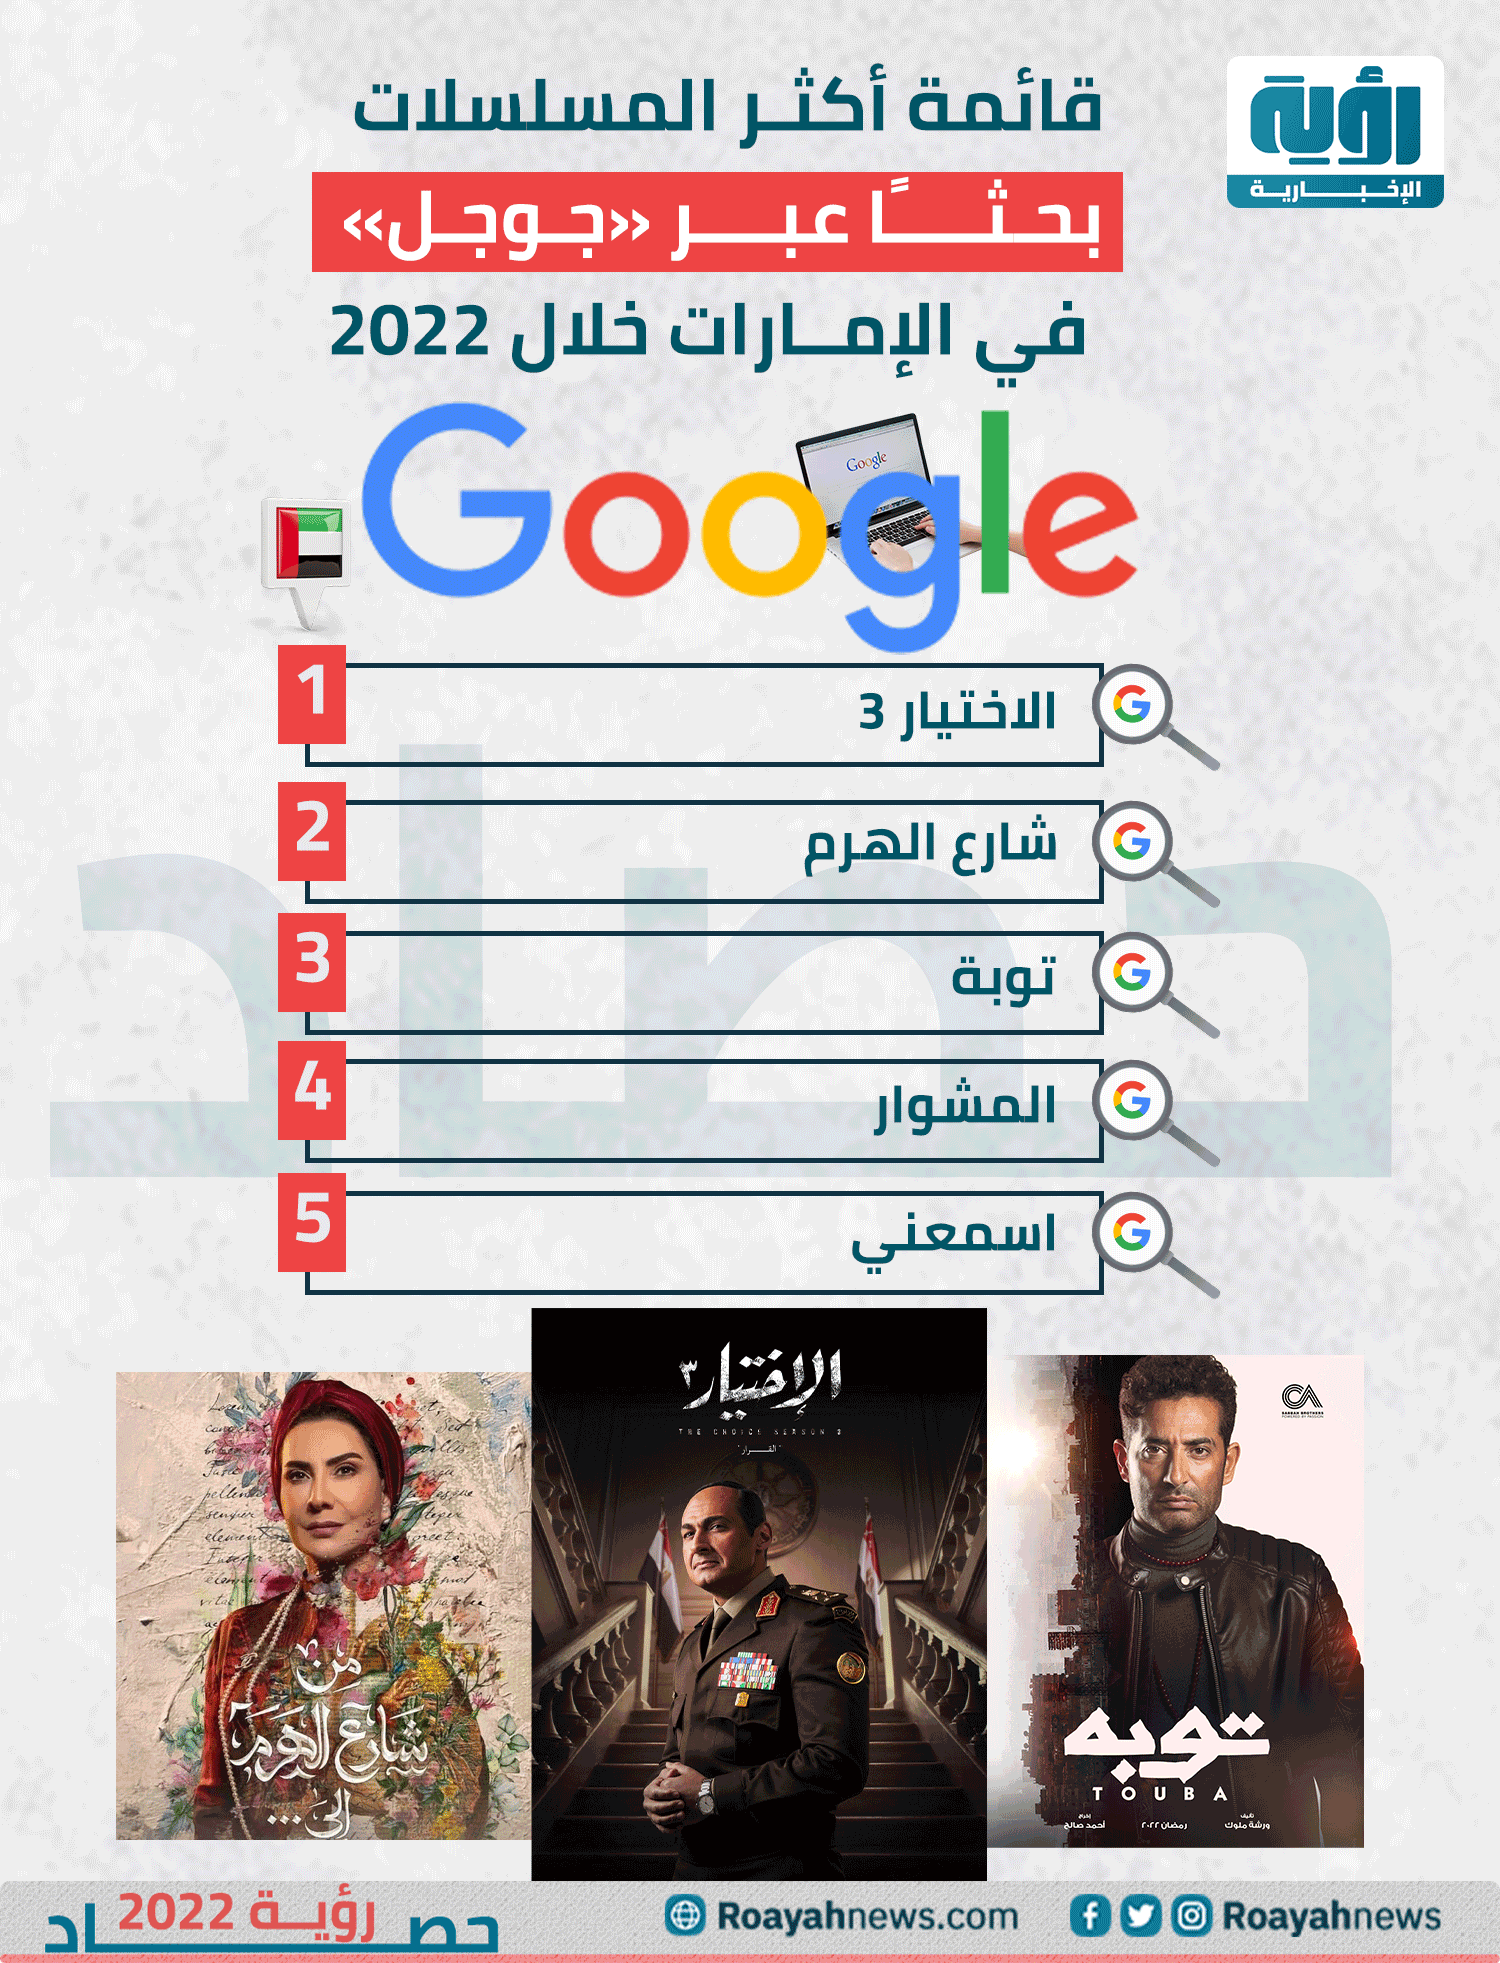 قائمة أكثر المسلسلات بحثًا عبر جوجل في الإمارات خلال 2022